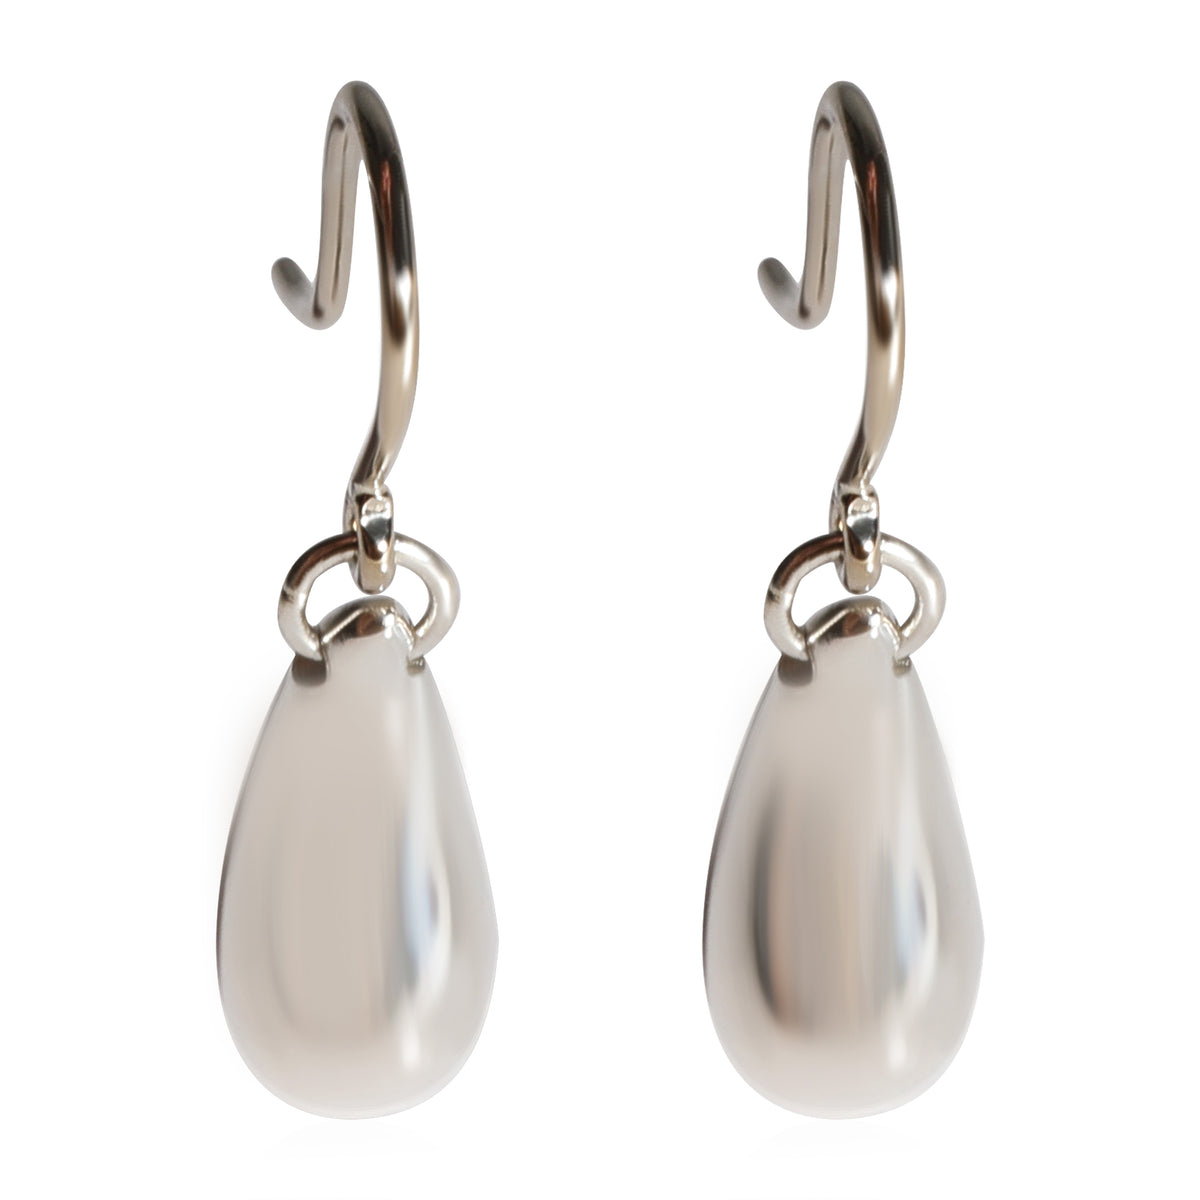 Tiffany & Co. Elsa Peretti Teardrop Earrings in 925 Sterling Silver